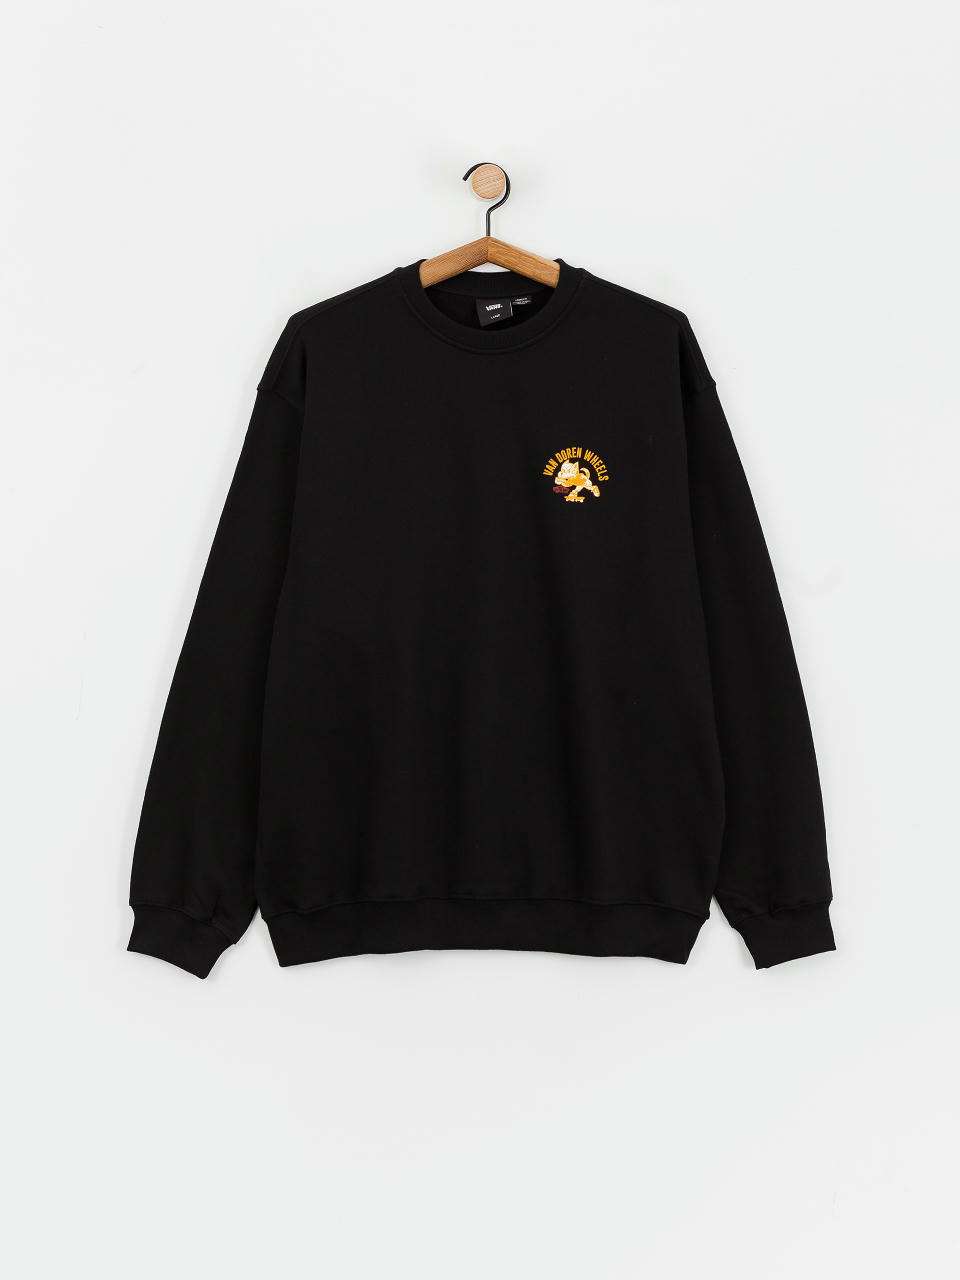 Vans Bark Gfx Loose Crew Sweatshirt (black)